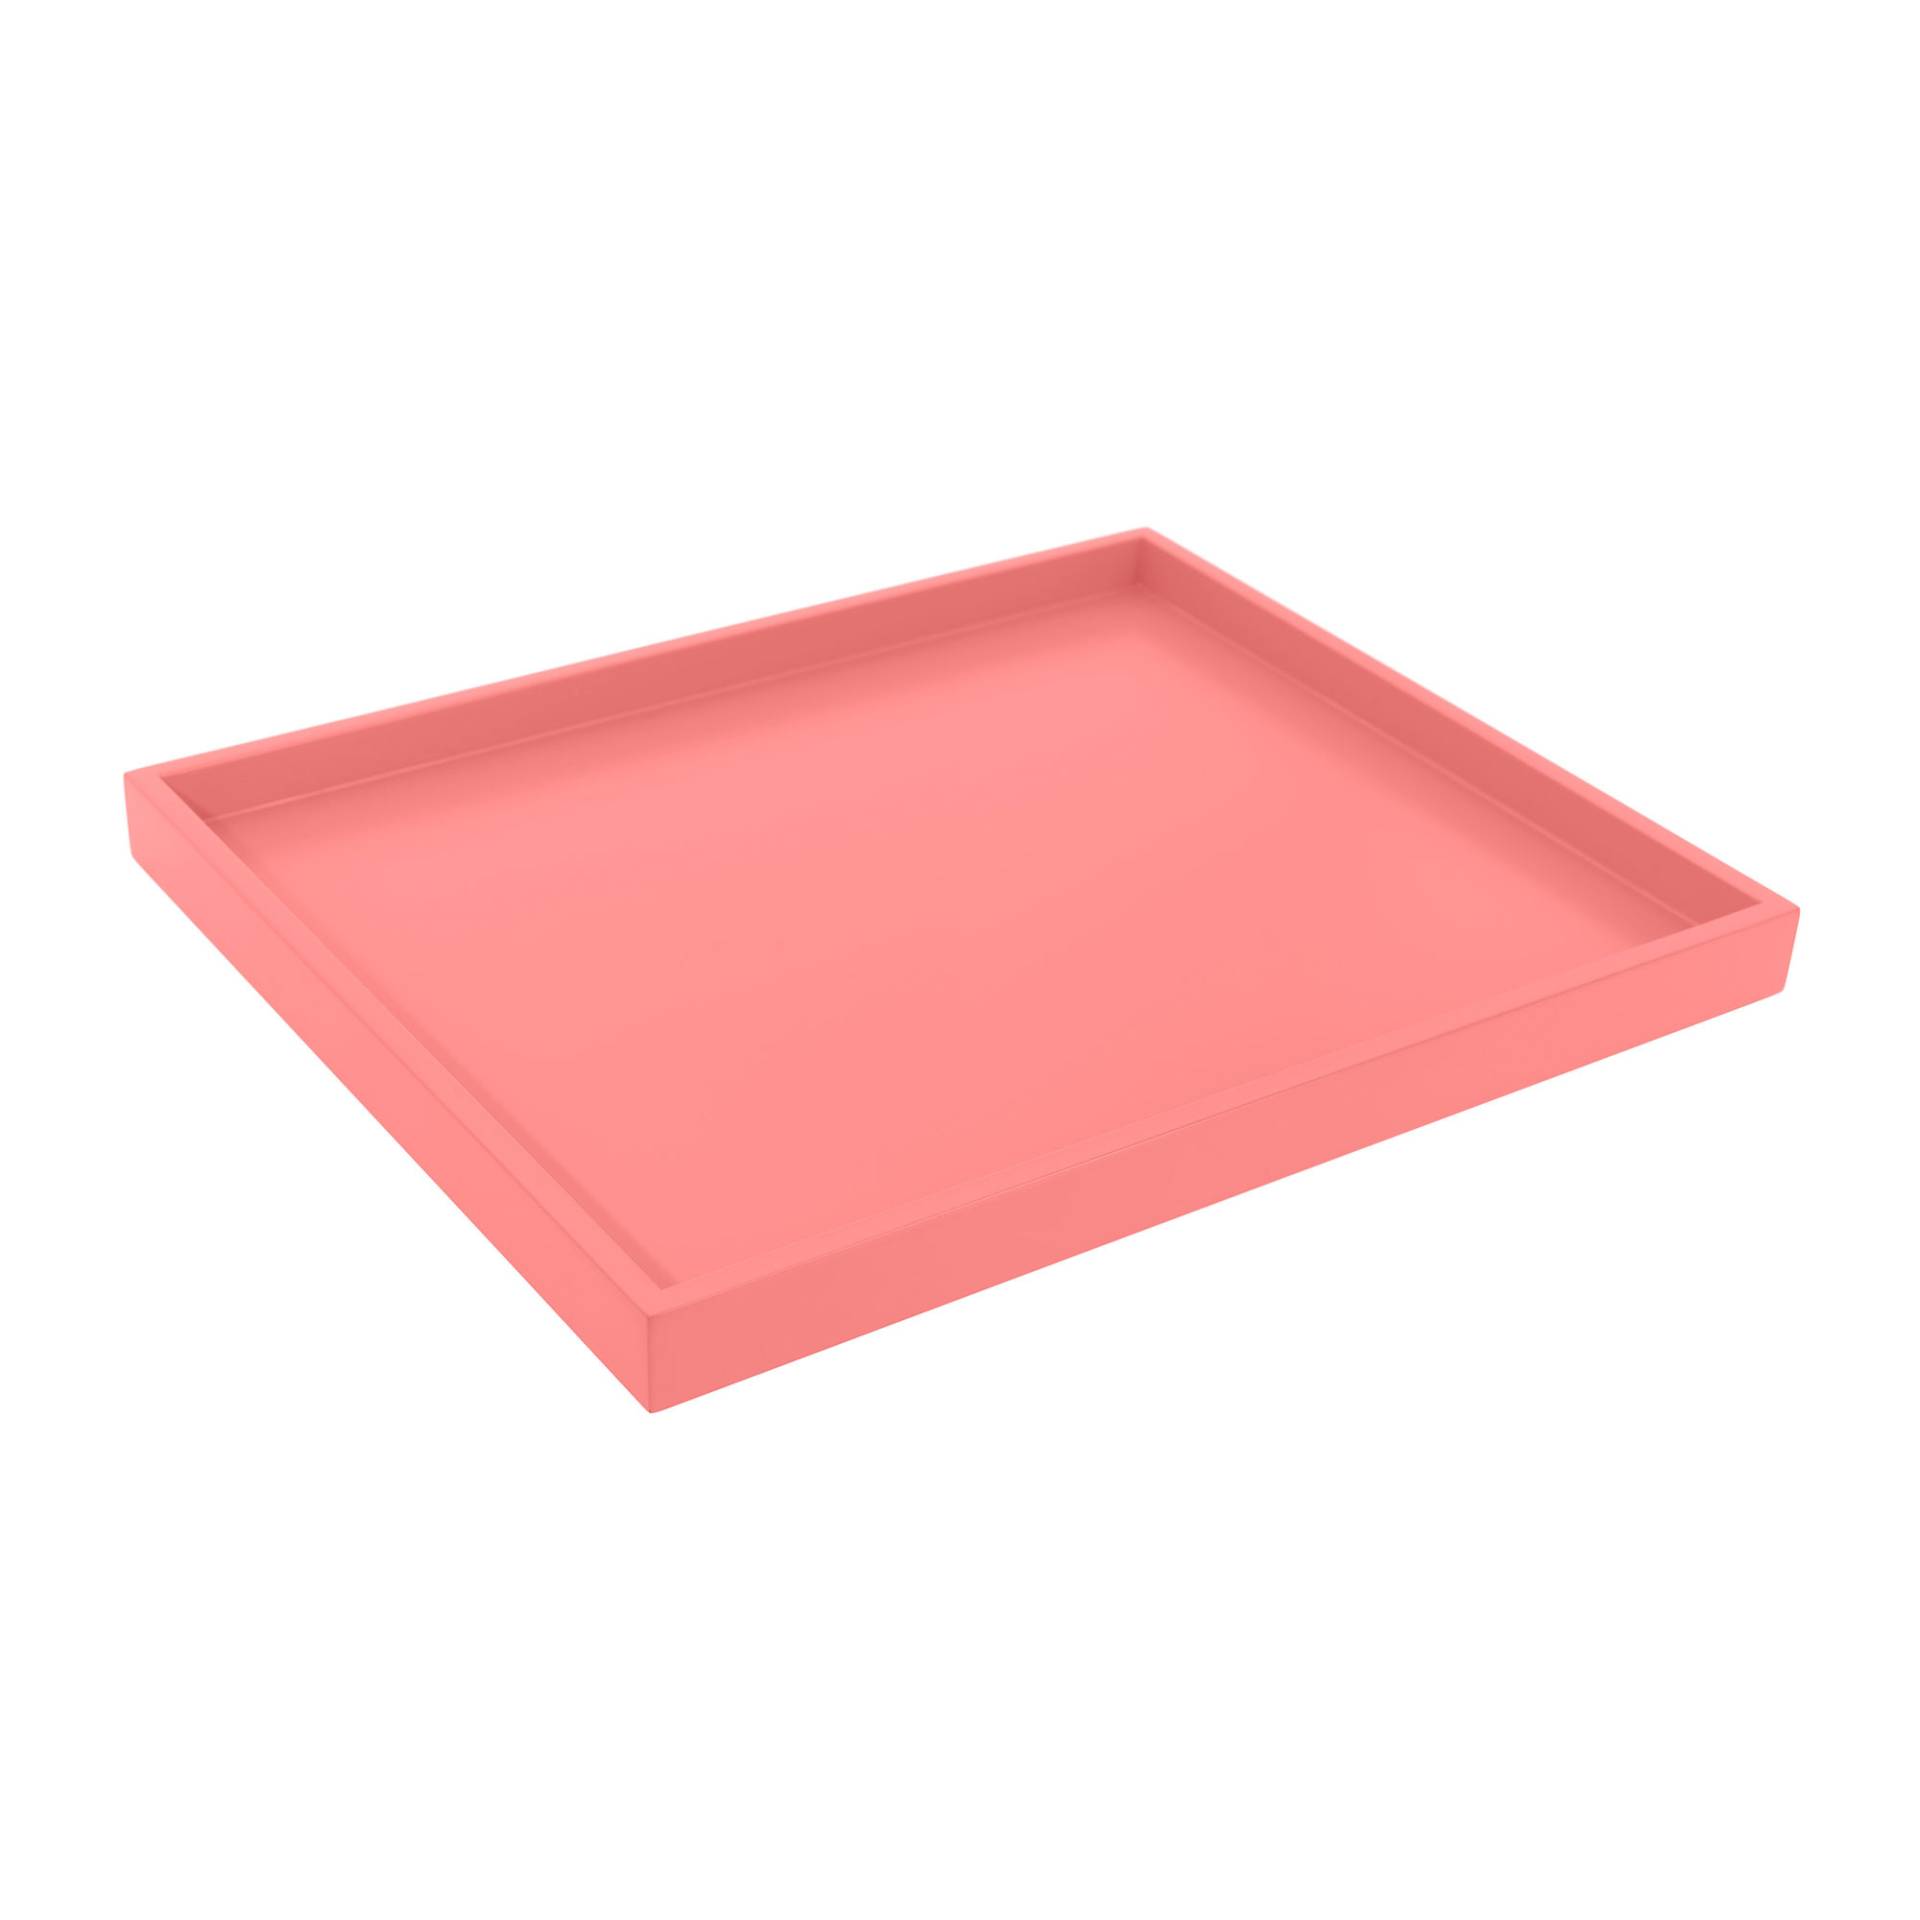 Schönbuch - Tray Little Tablett - flamingo pink /lackiert/BxHxT 30x3x36,5cm von Schönbuch